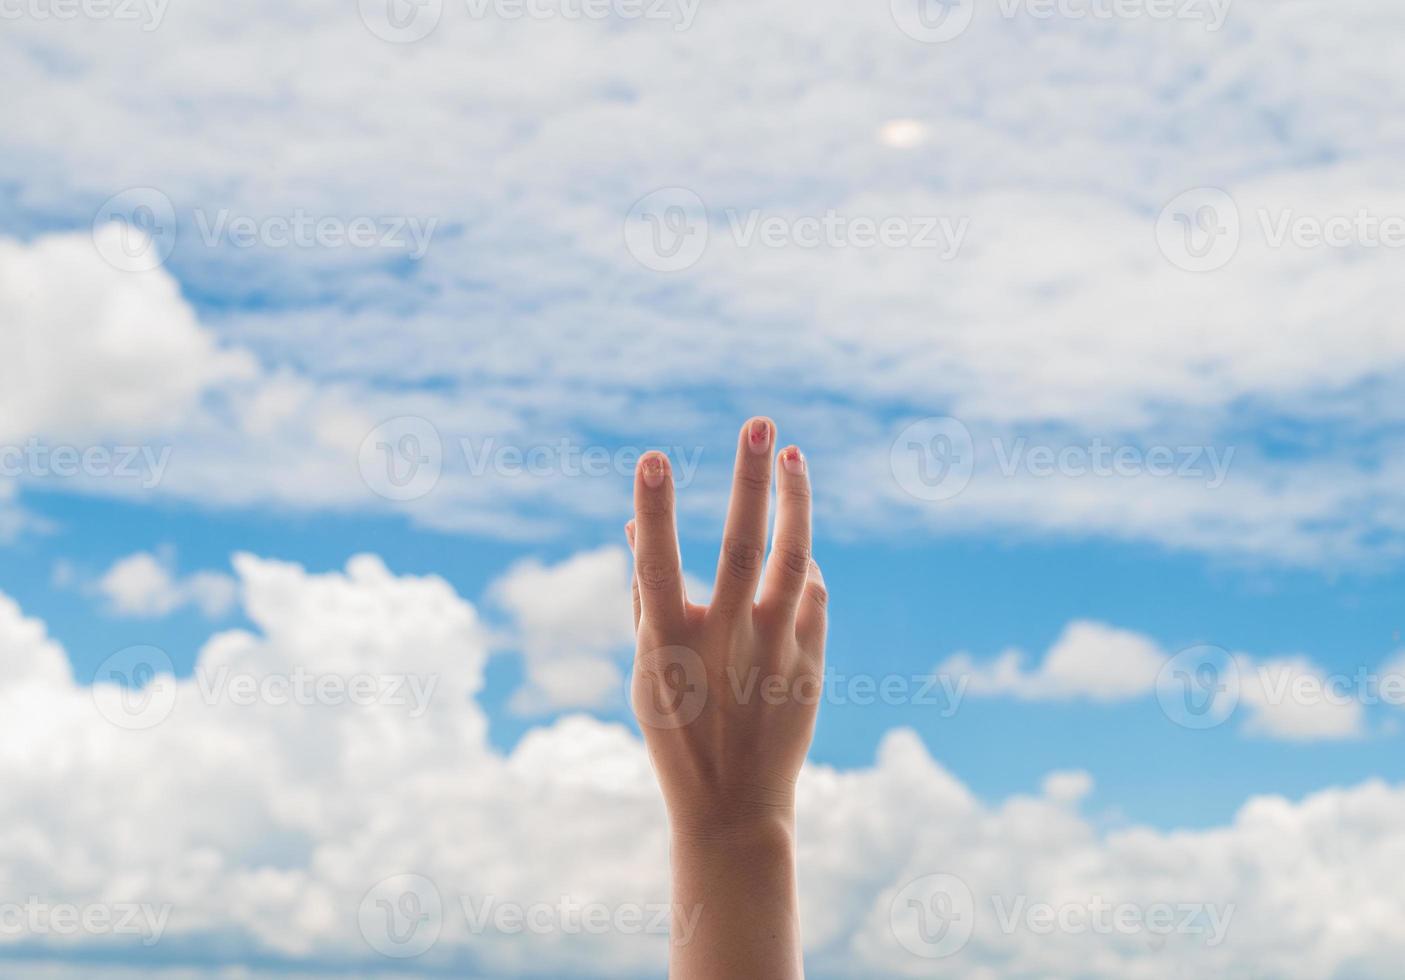 manos rezando en el fondo del cielo azul, joven orado, religión y espiritualidad con creencia foto